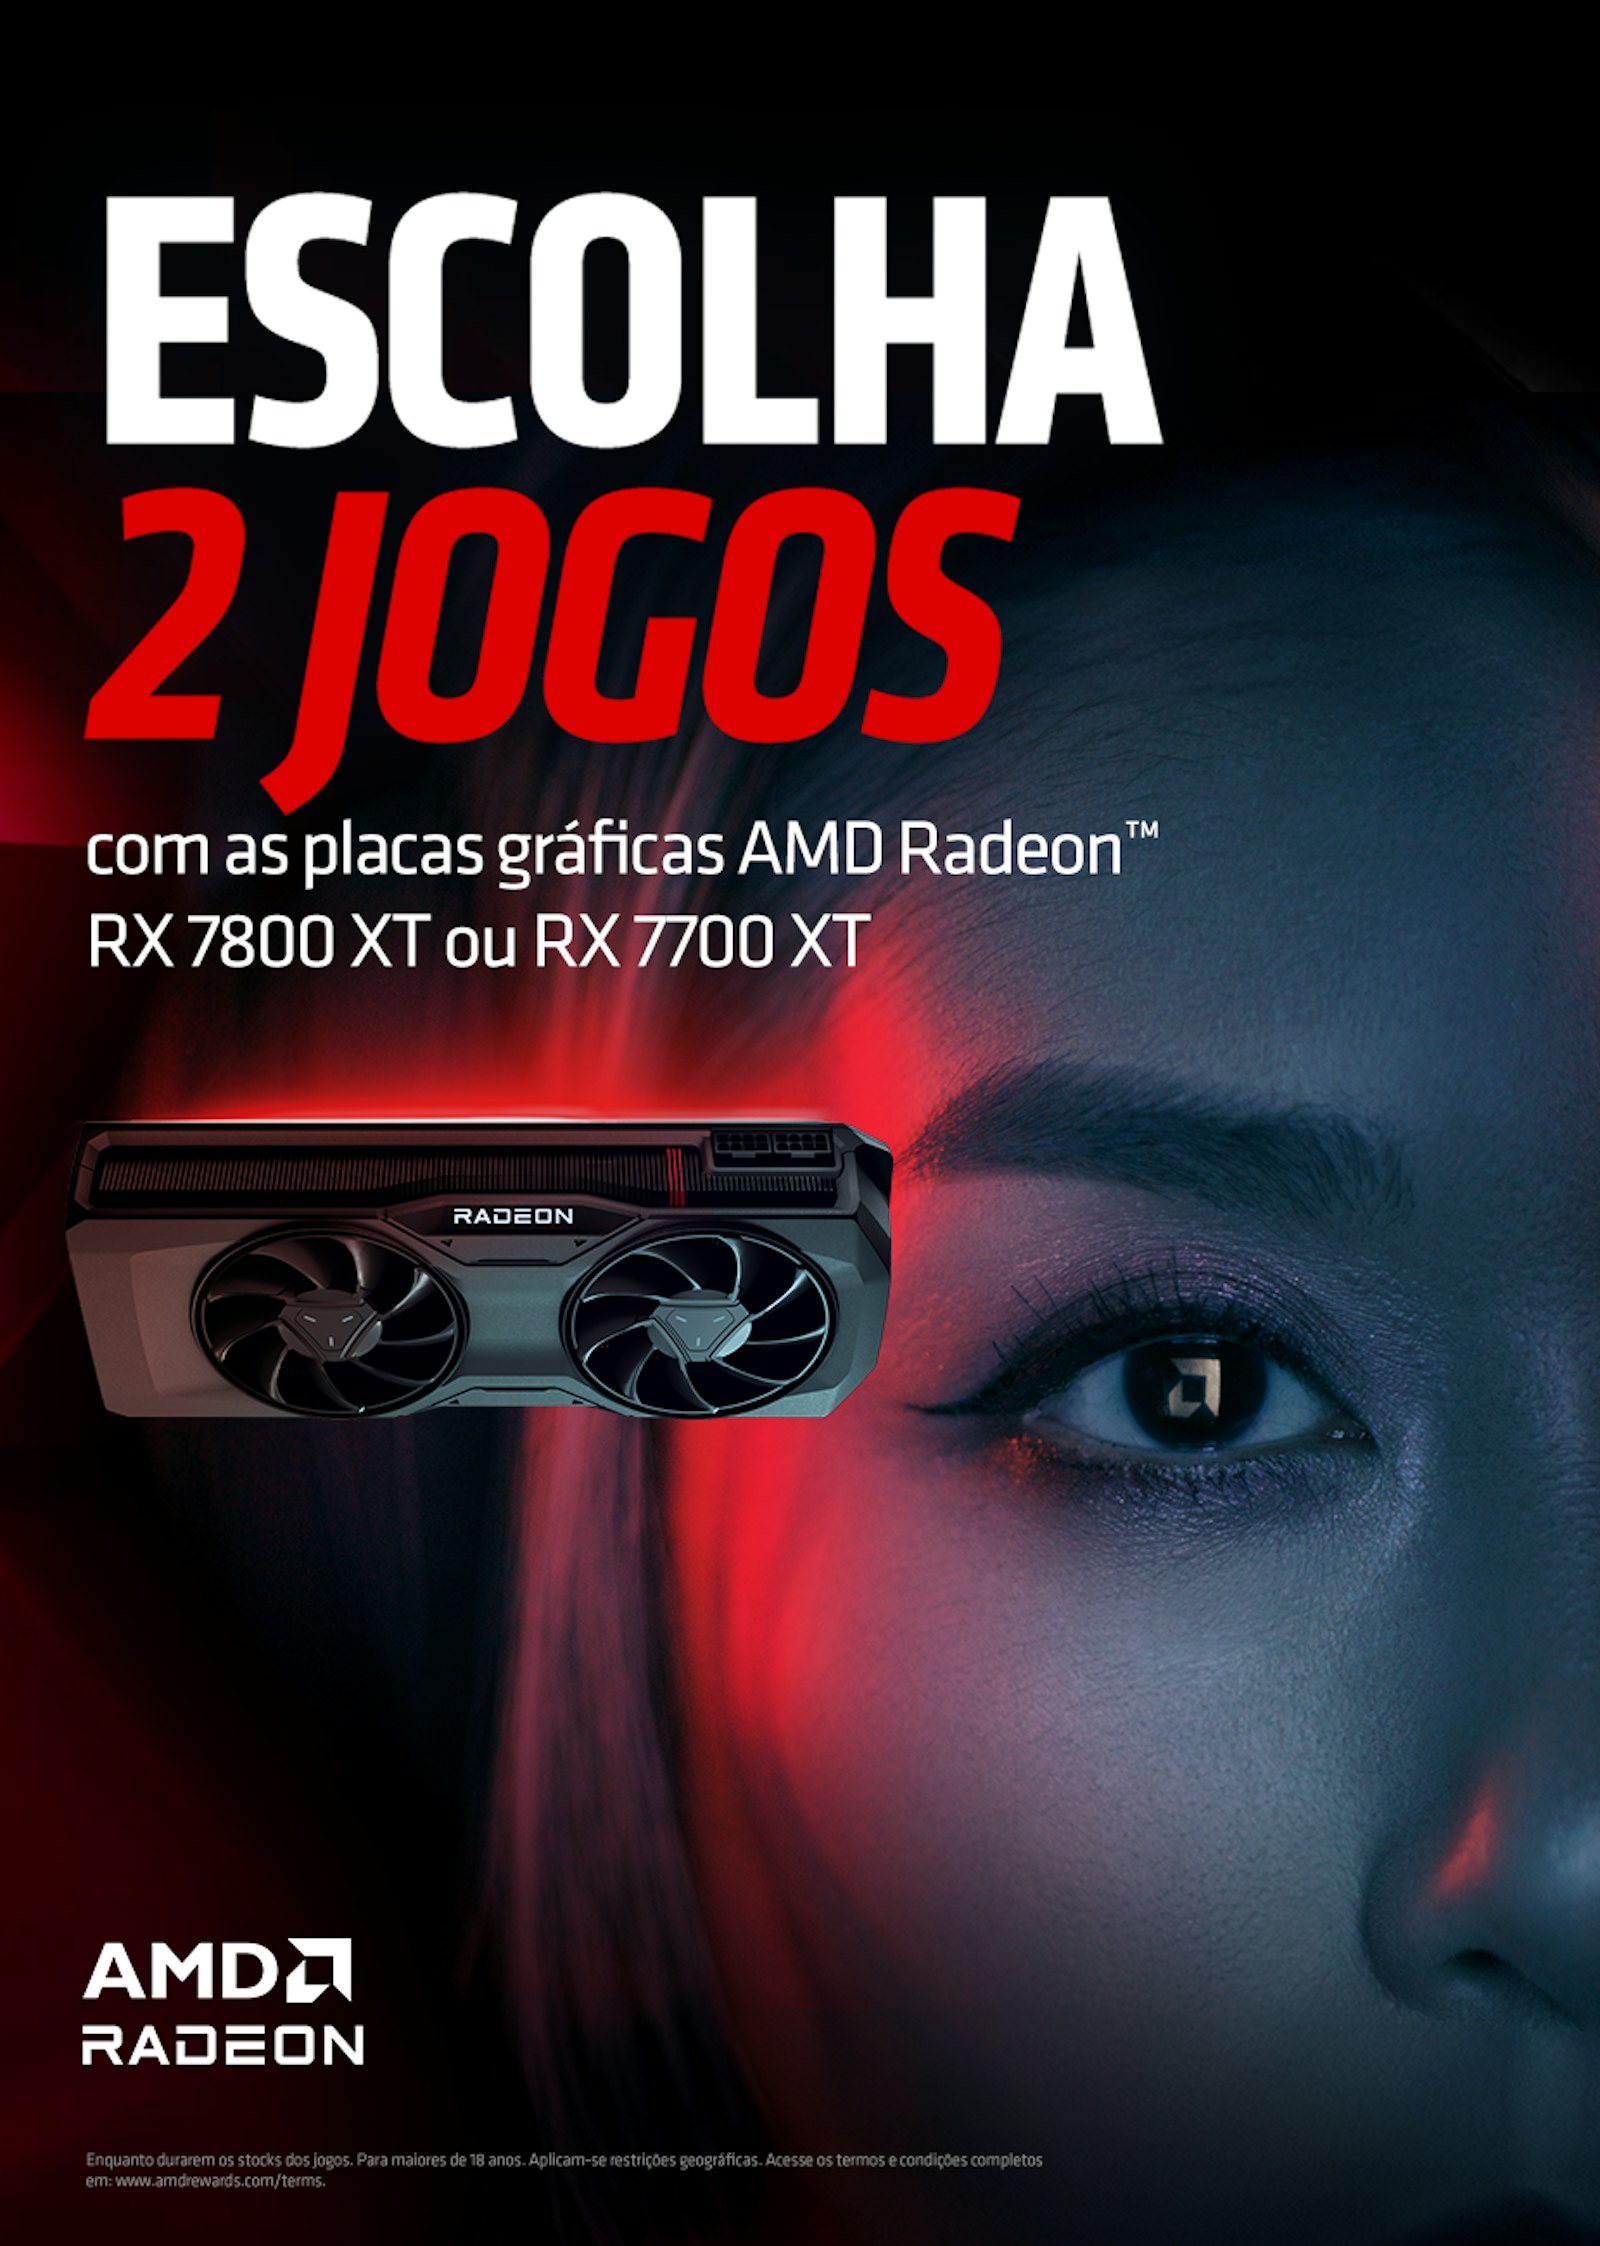 AMD Radeon Bundle